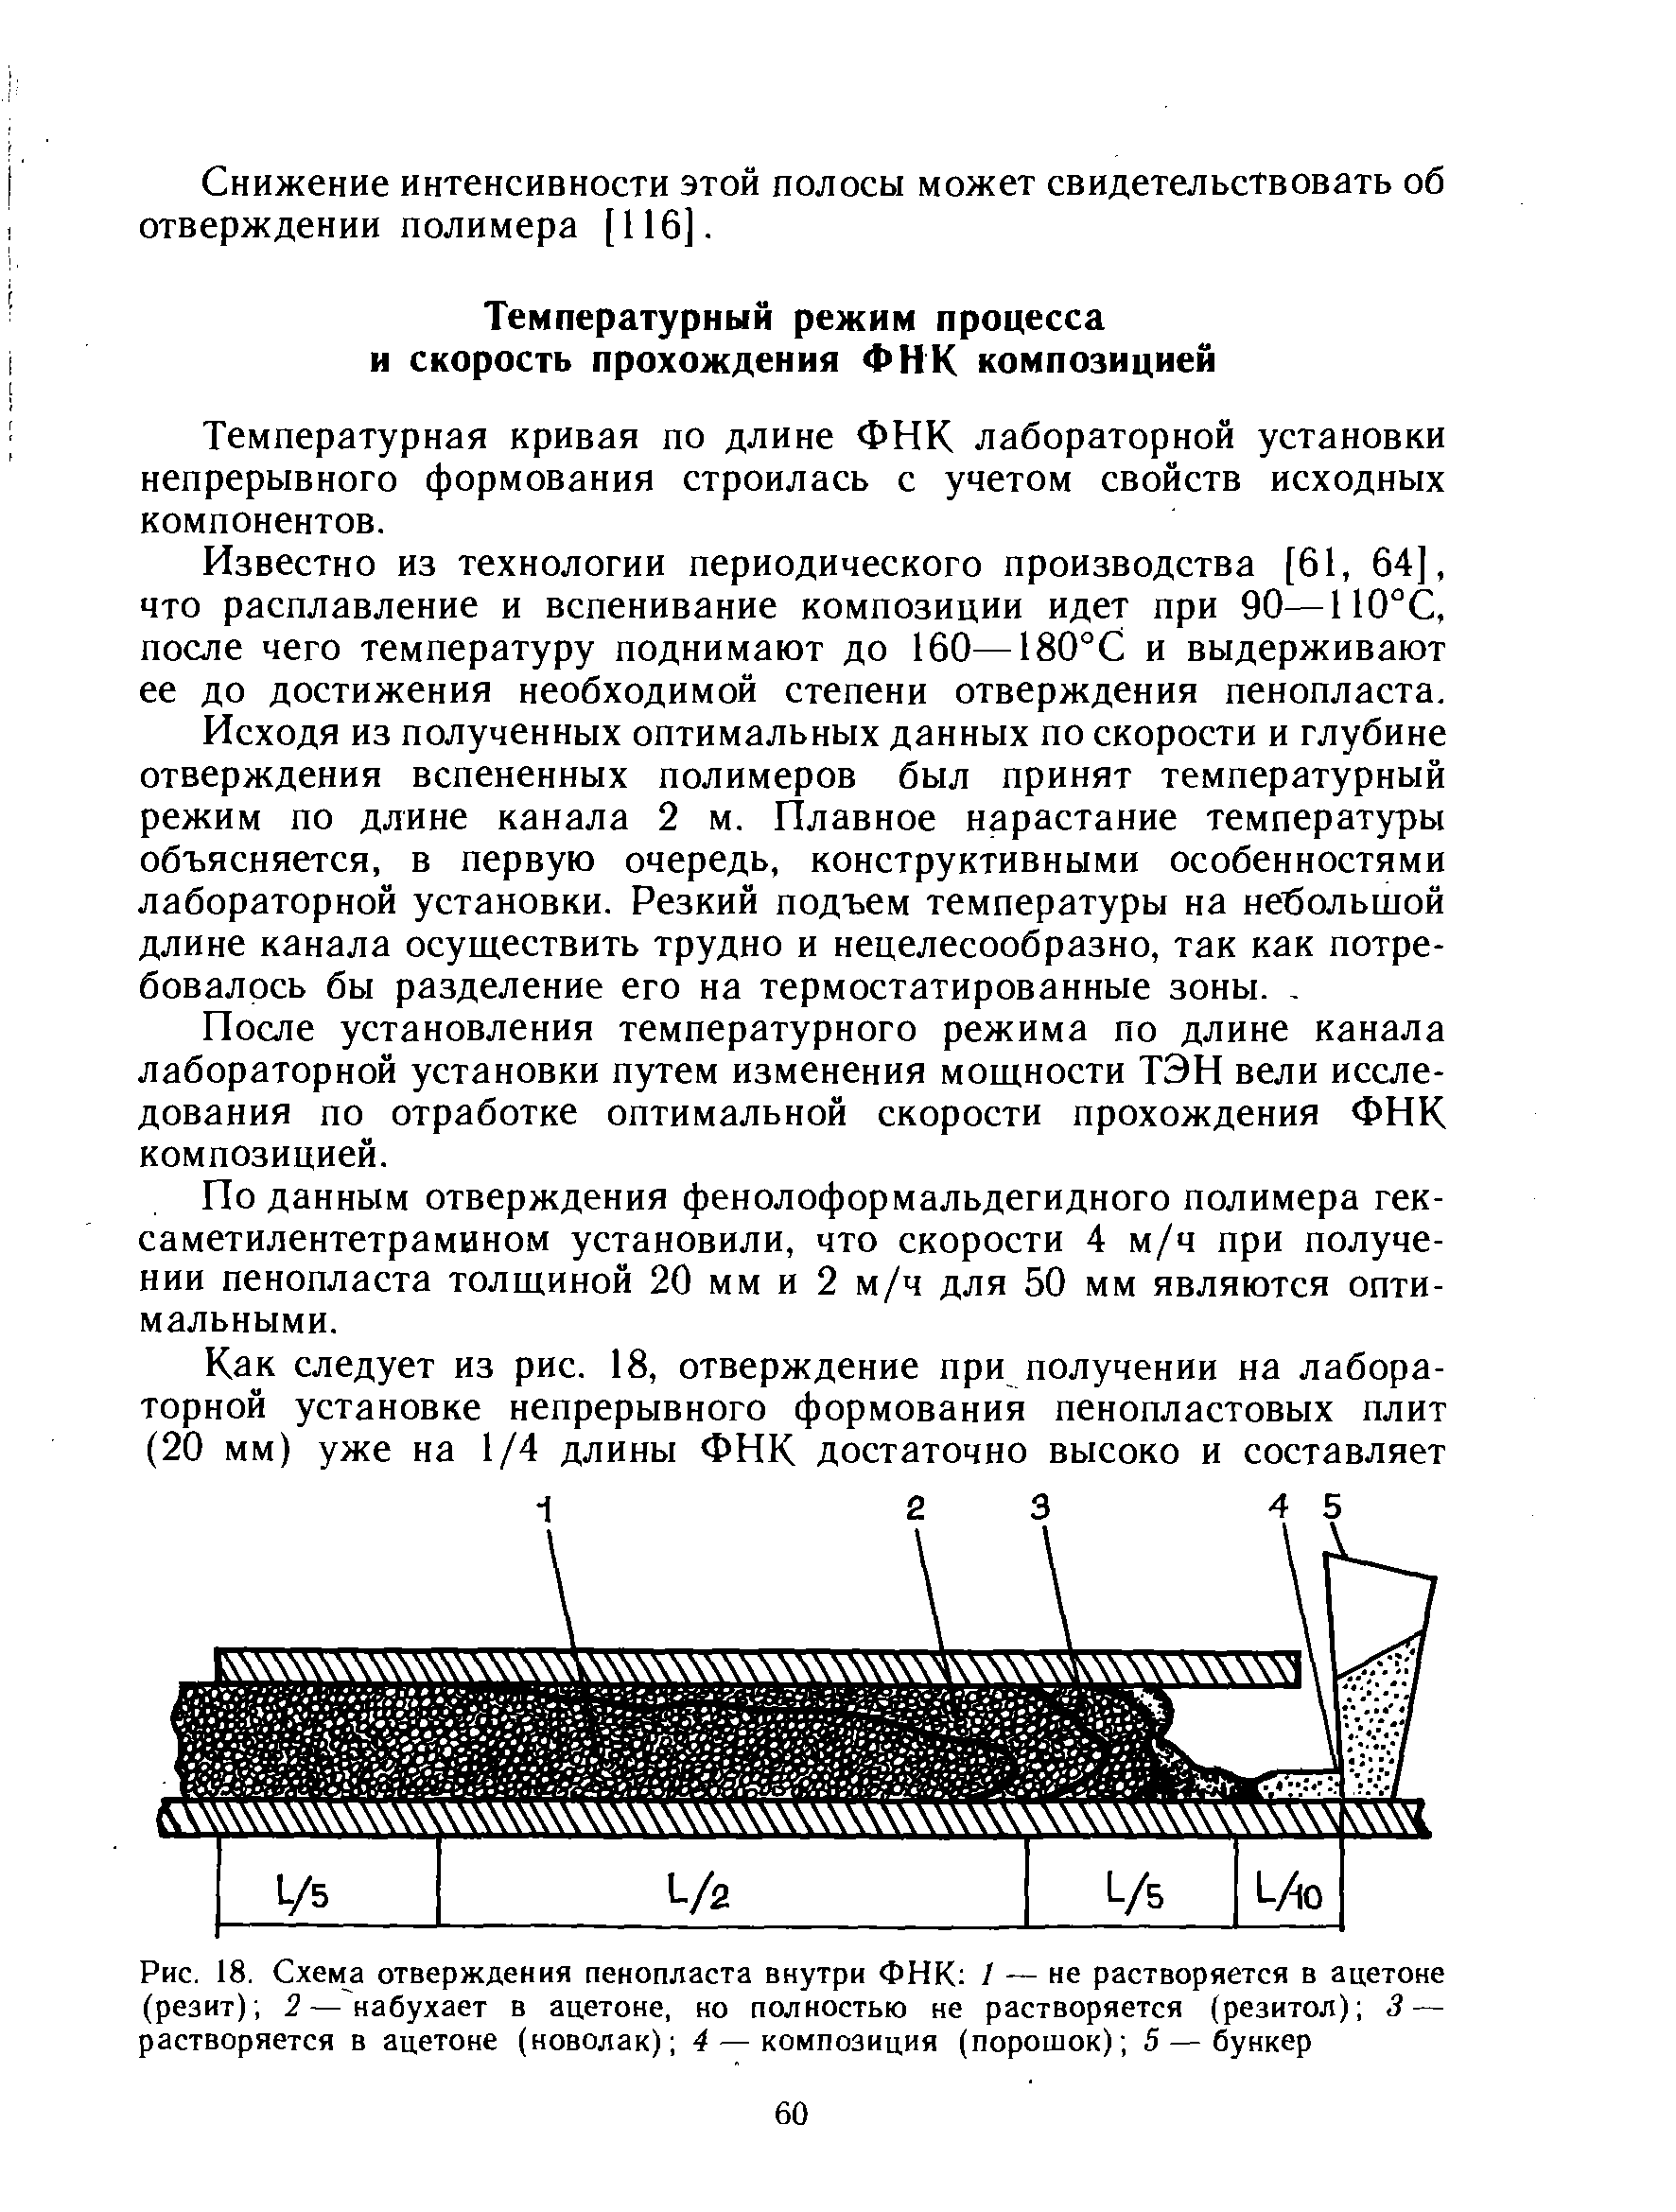 Температурная кривая по длине ФНК лабораторной установки непрерывного формования строилась с учетом свойств исходных компонентов.